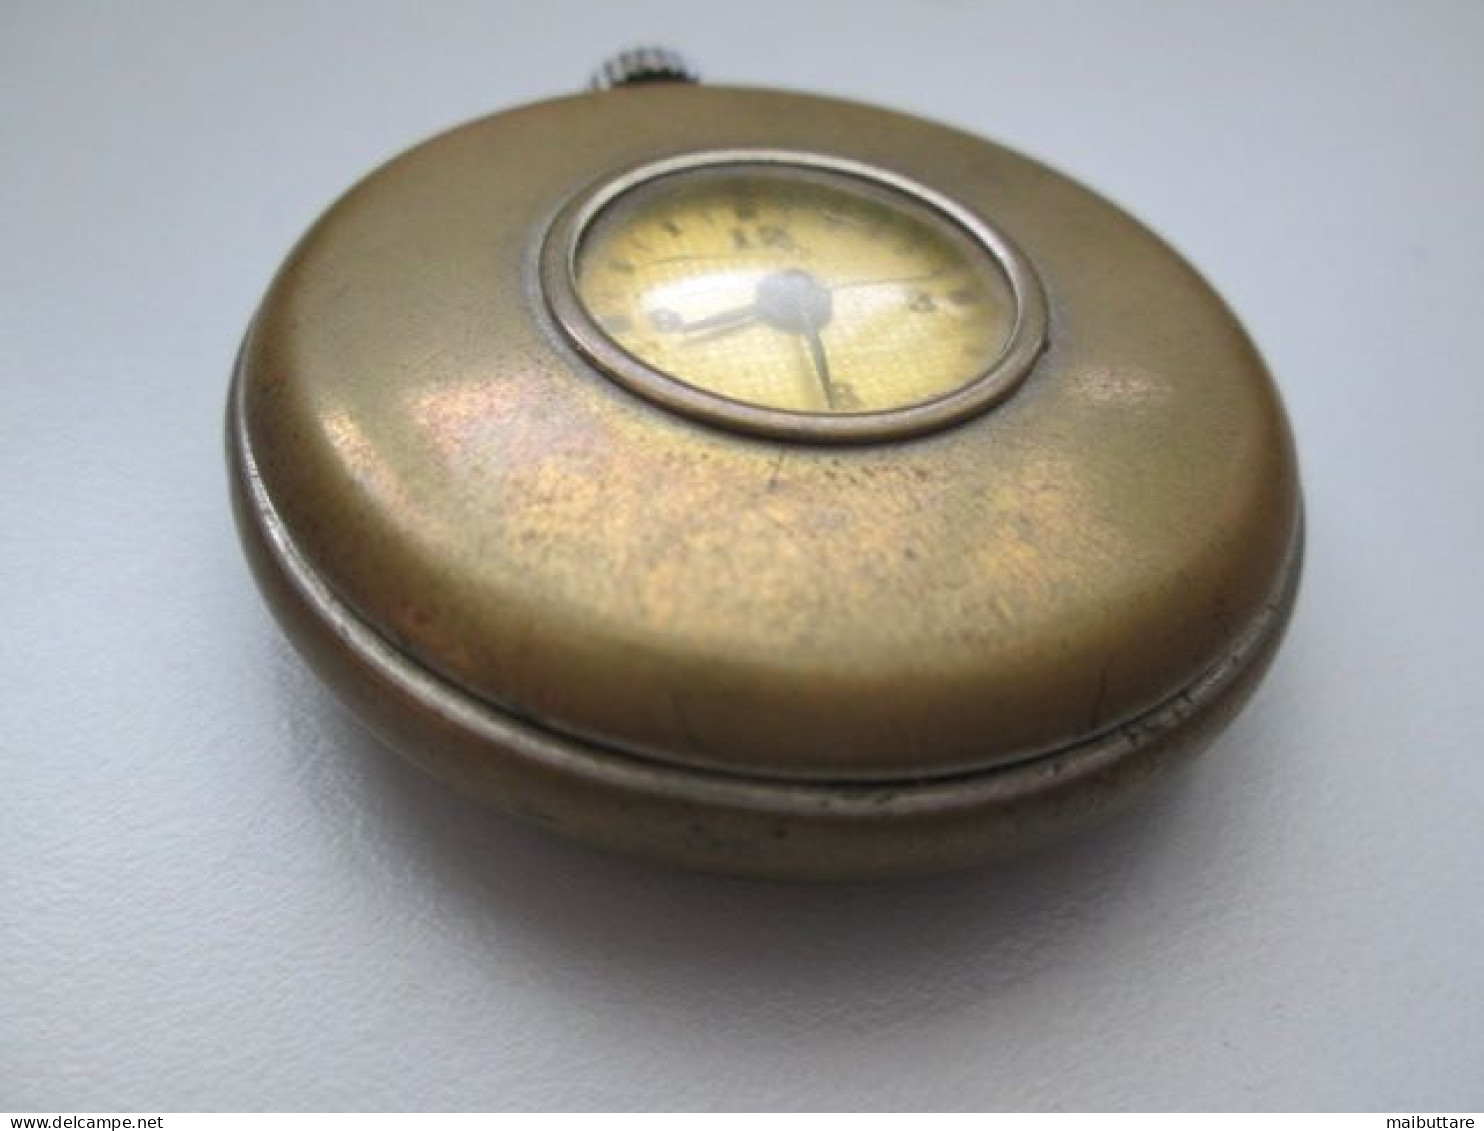 Orologio Da Tasca Made In Usa - Occhio Di Bue Diametro Complessivo Cm. 5 Diametro Quadrante Cm. 2 Oggetto Da Collezione - Orologi Antichi